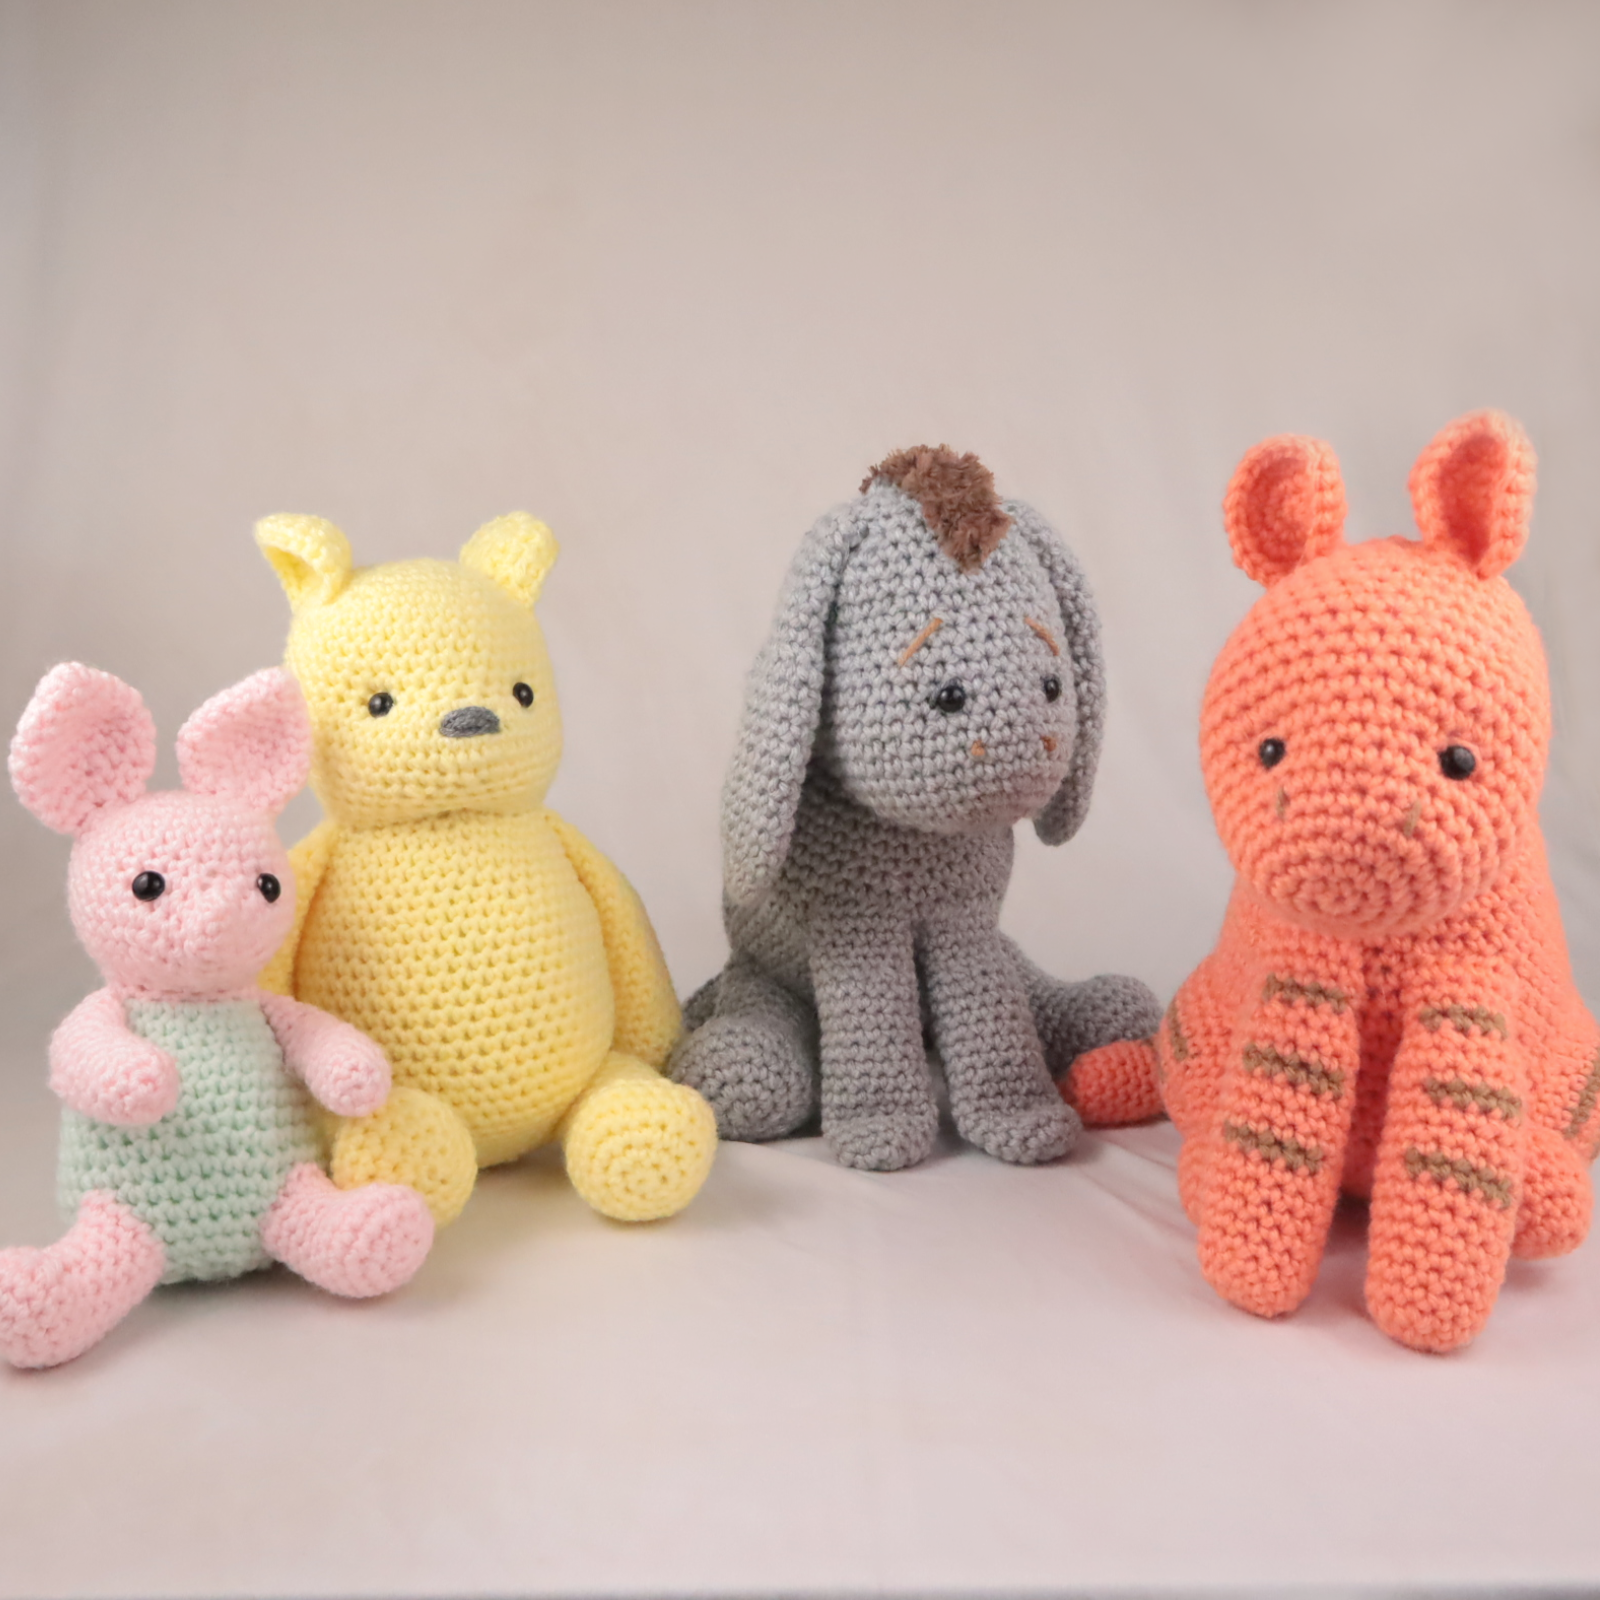 Free classic winnie the pooh set amigurumi crochet pattern